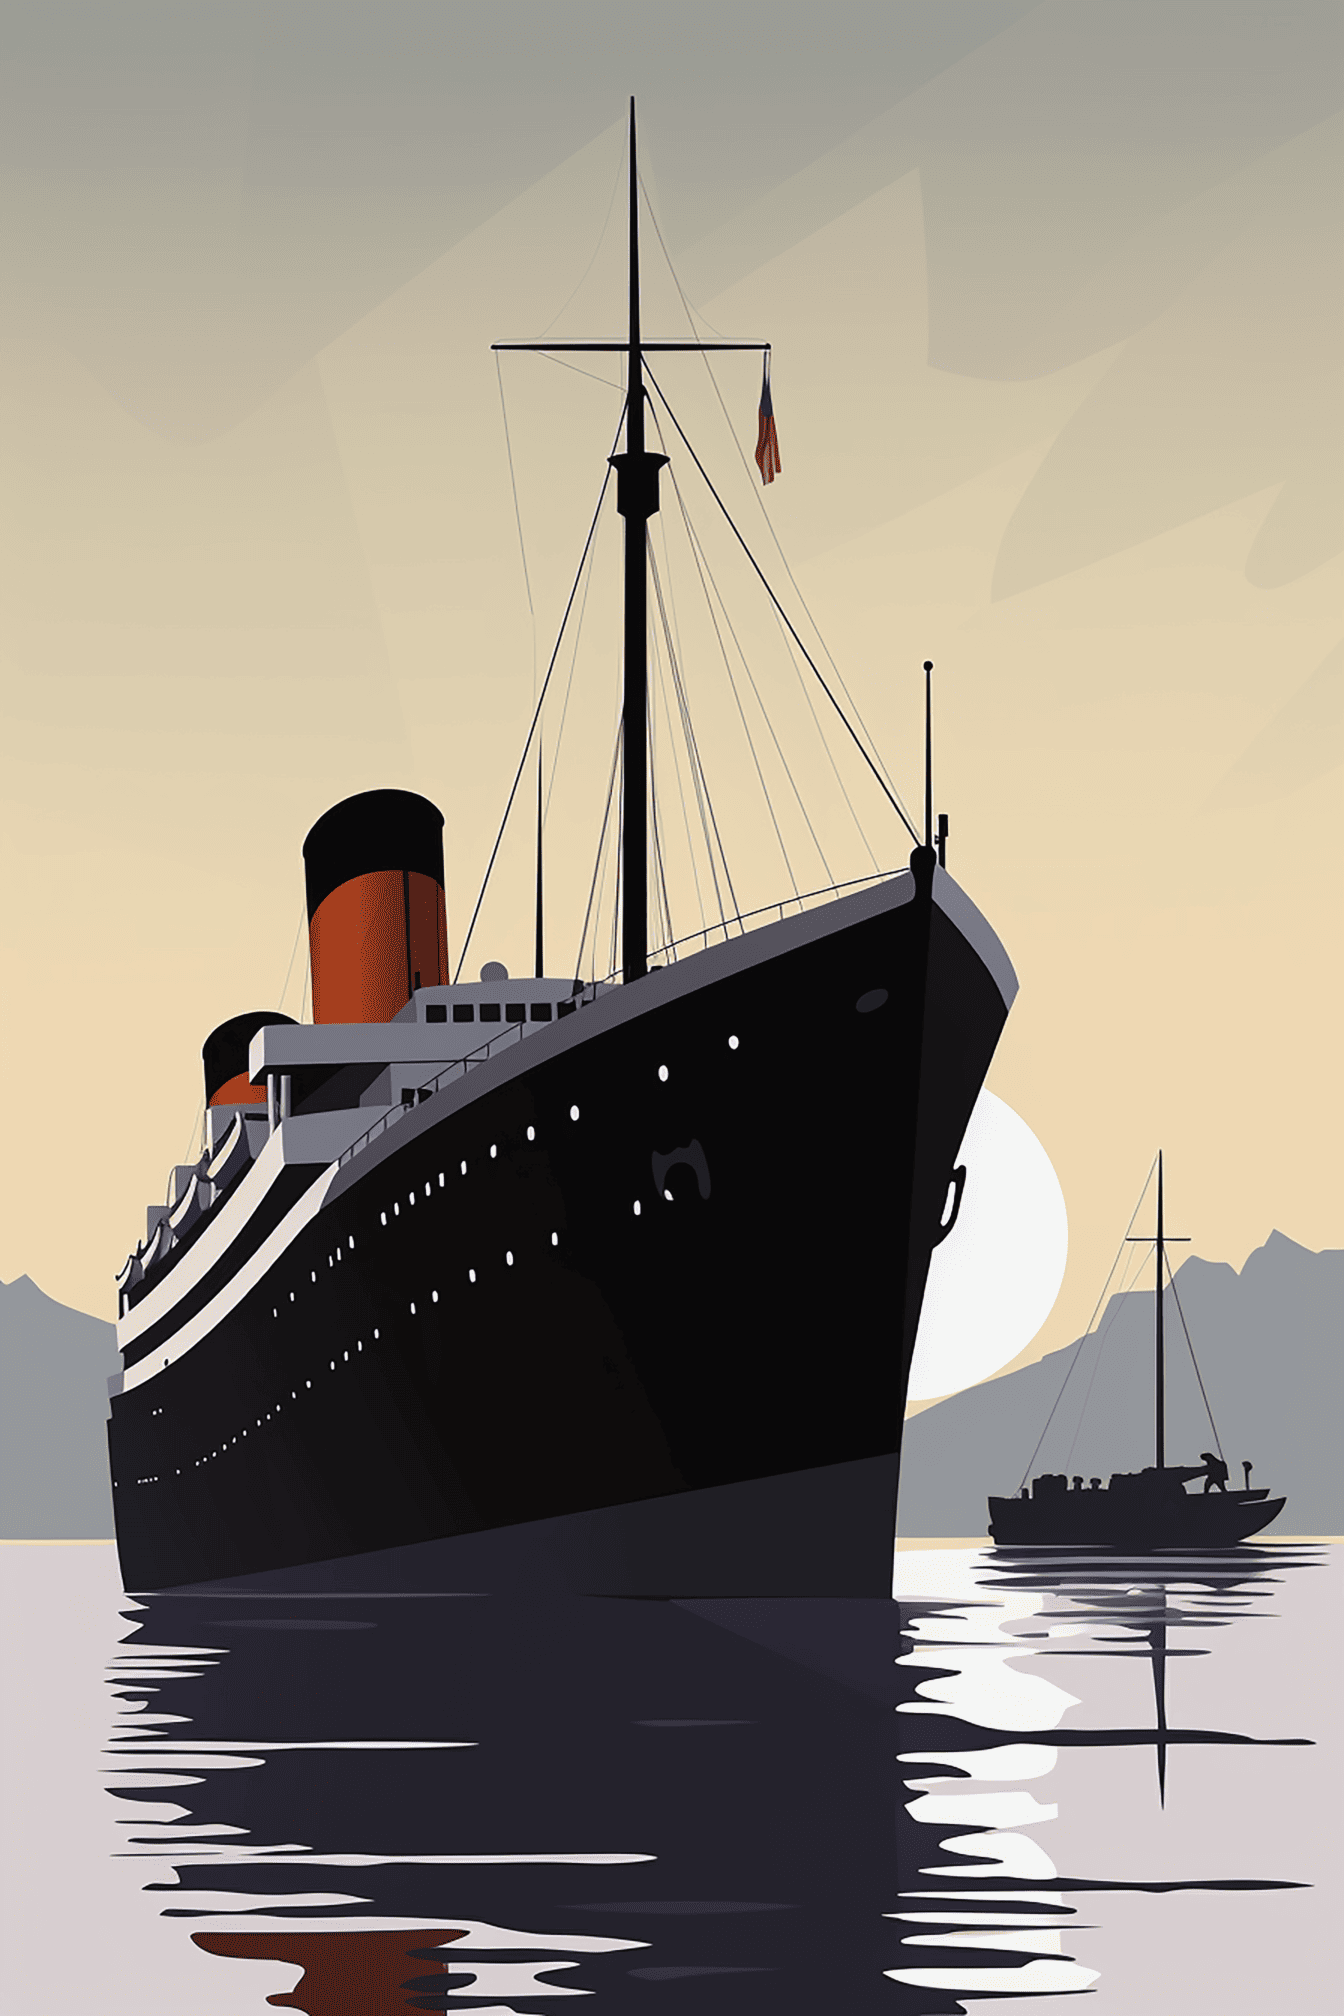 Havainnekuva Titanic-höyrylaivasta, jonka taustalla näkyy kalastusveneen siluetti